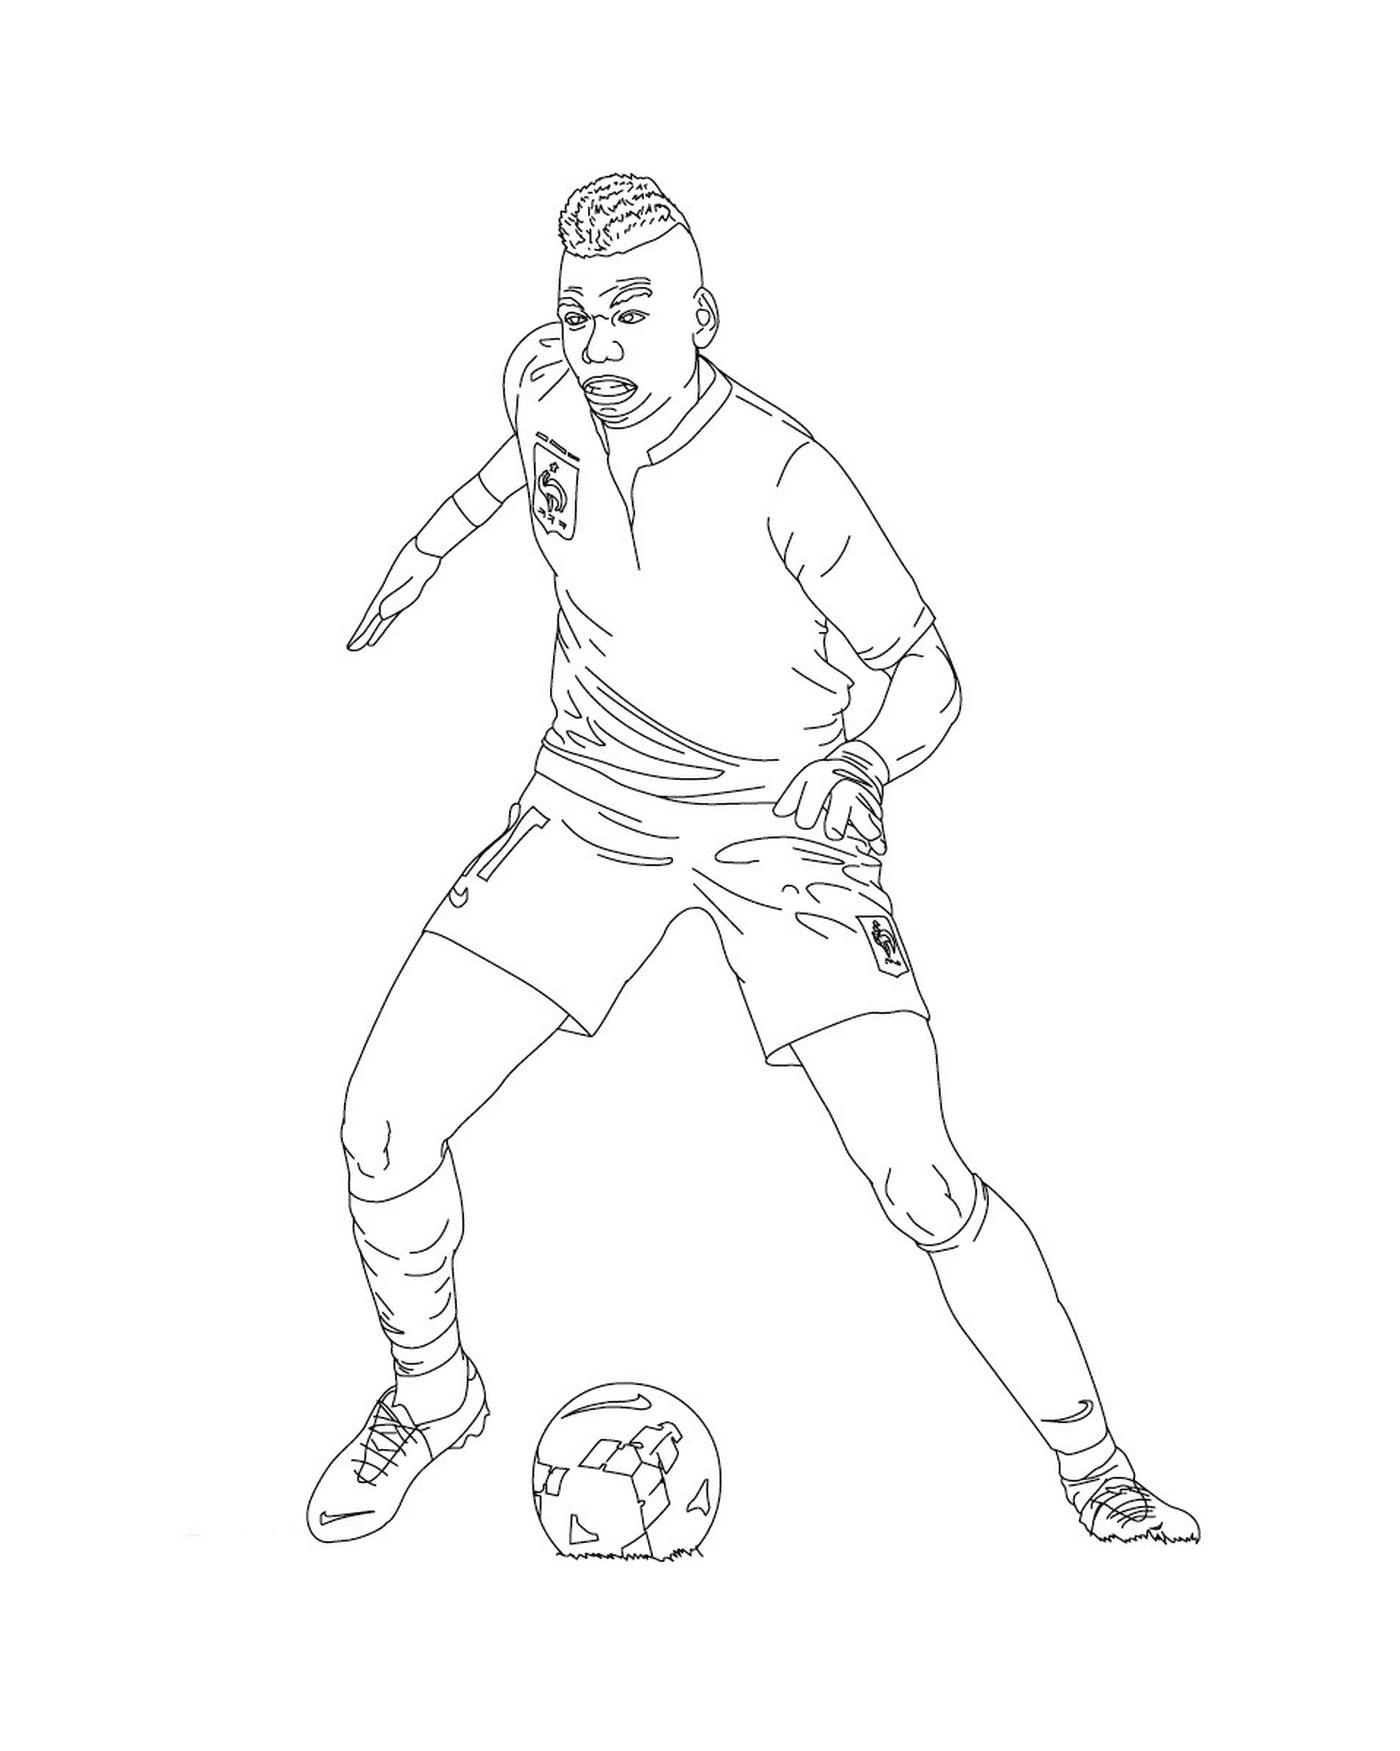   Un joueur de football donnant un coup de pied dans un ballon 